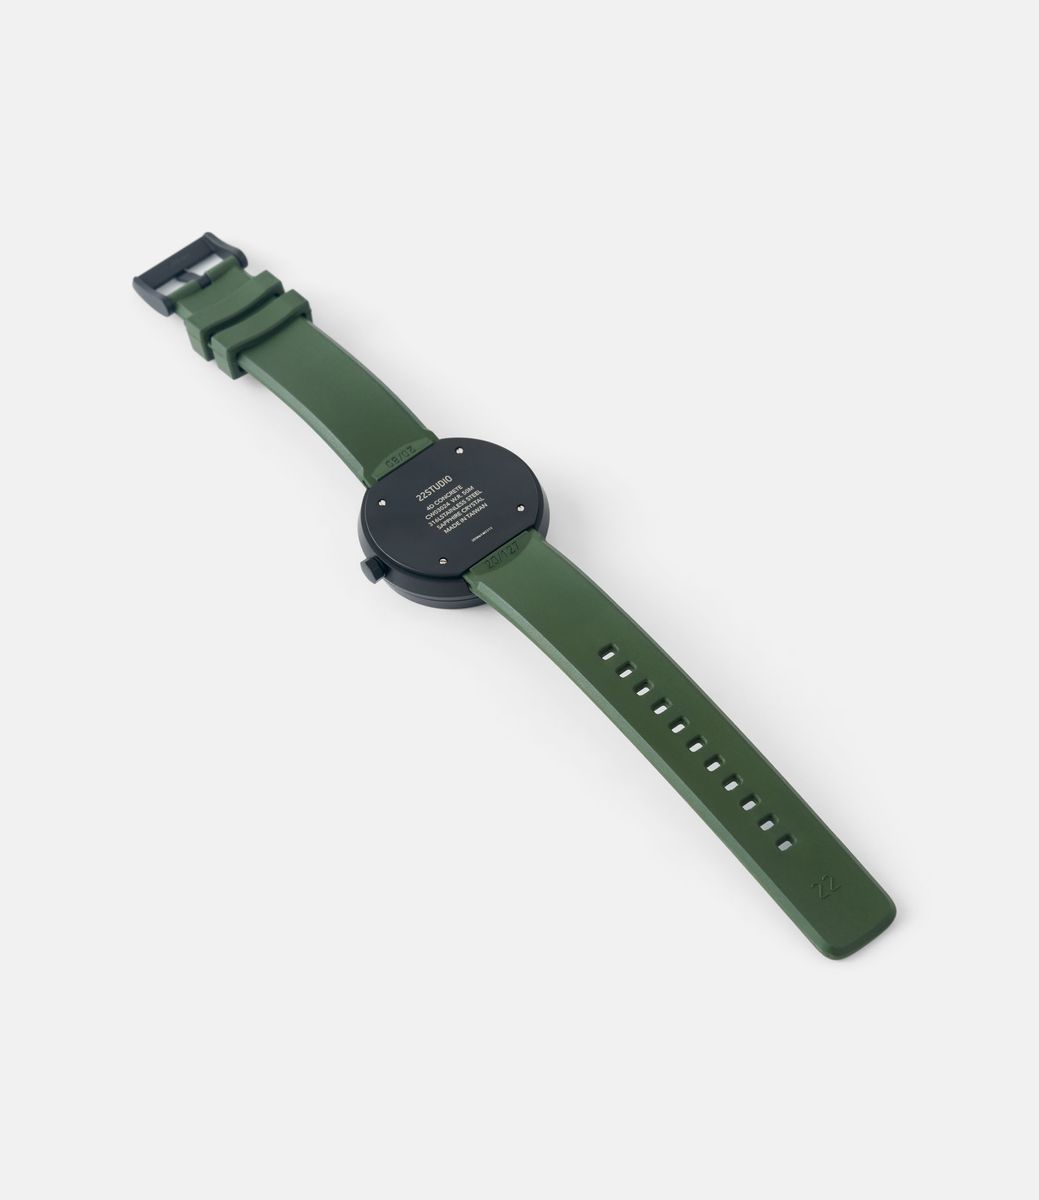 22 Studio 4D Watch Moss Green — часы с циферблатом из бетона (44 мм)